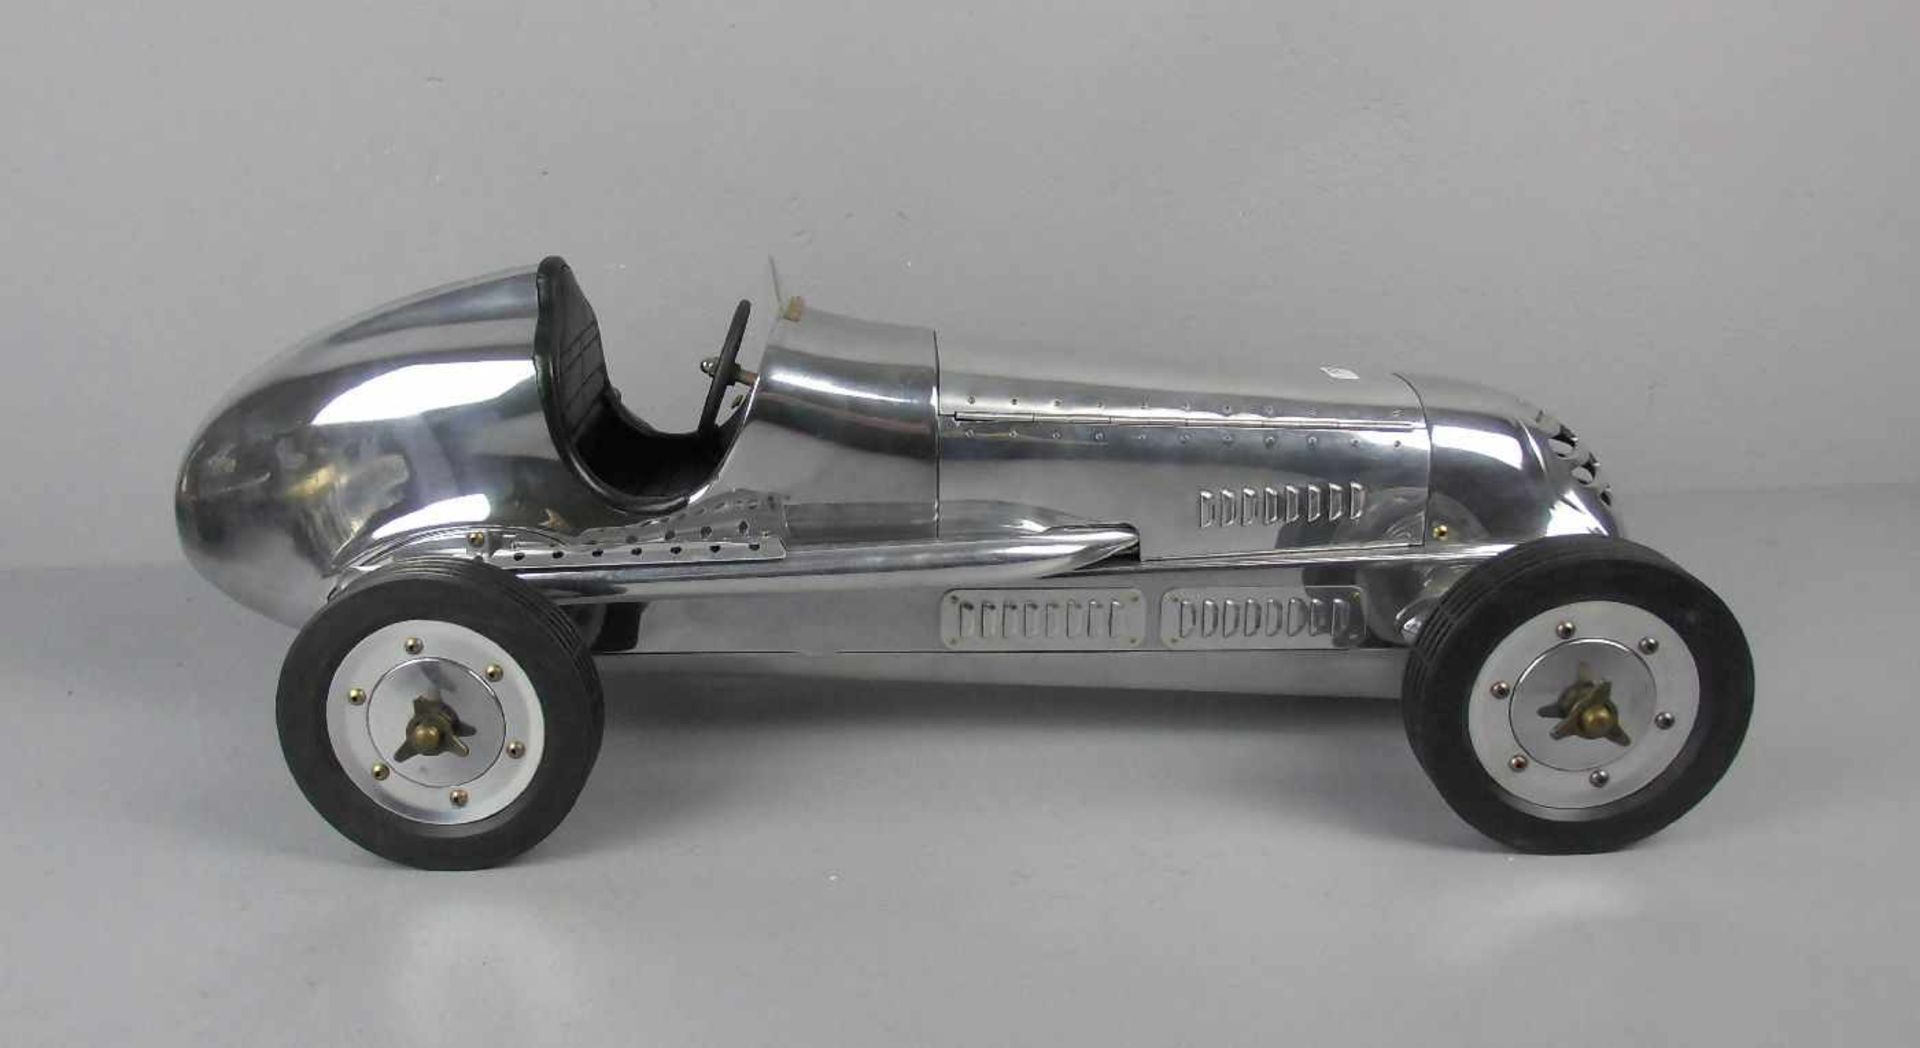 MODELL - AUTO: Mercedes Silberpfeil W 25 von 1934 / Grand Prix Model Car, unter dem Stand gemarkt " - Bild 2 aus 6